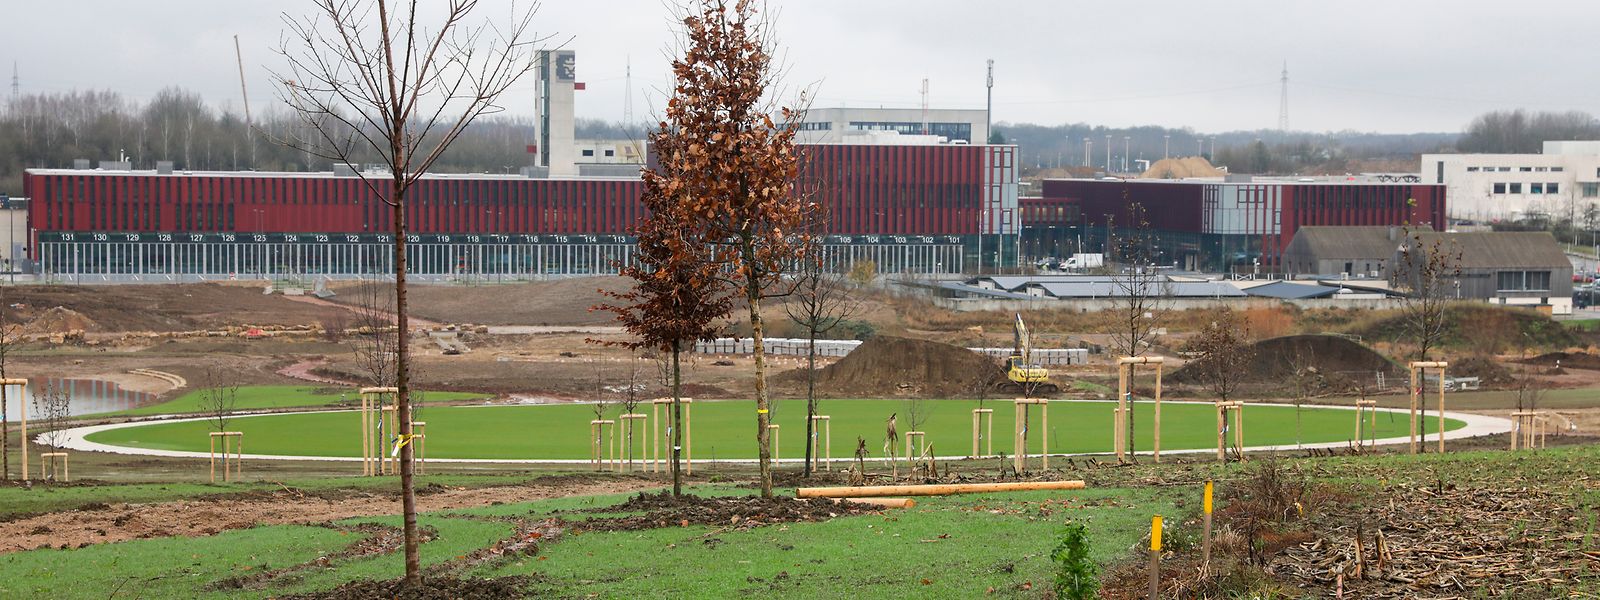 Für den Bau des Parks in Gasperich stehen fast sieben Millionen Euro im Budget 2022.